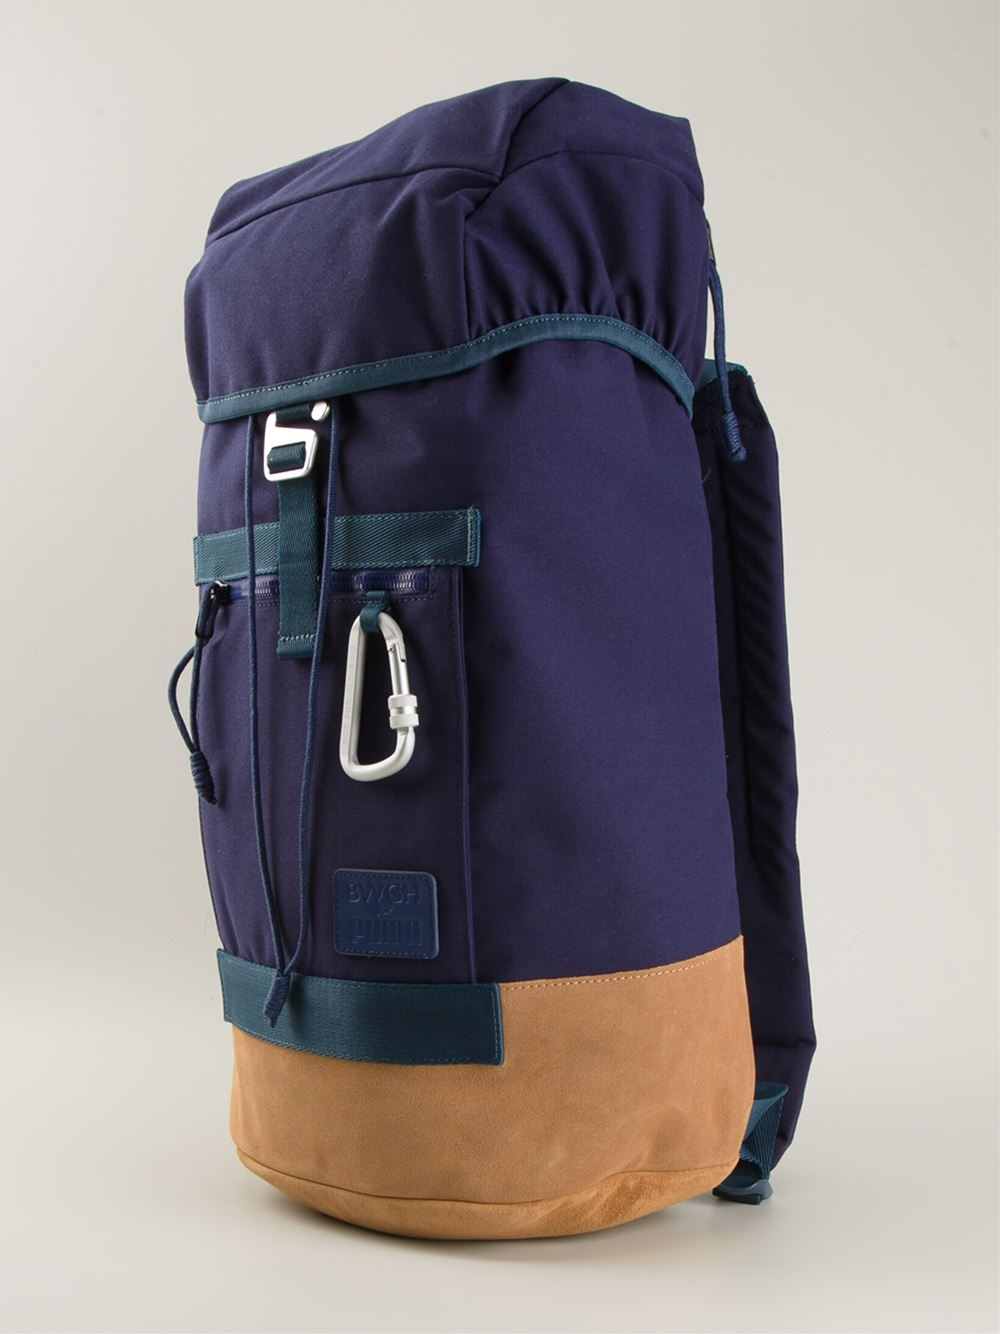 puma bwgh backpack